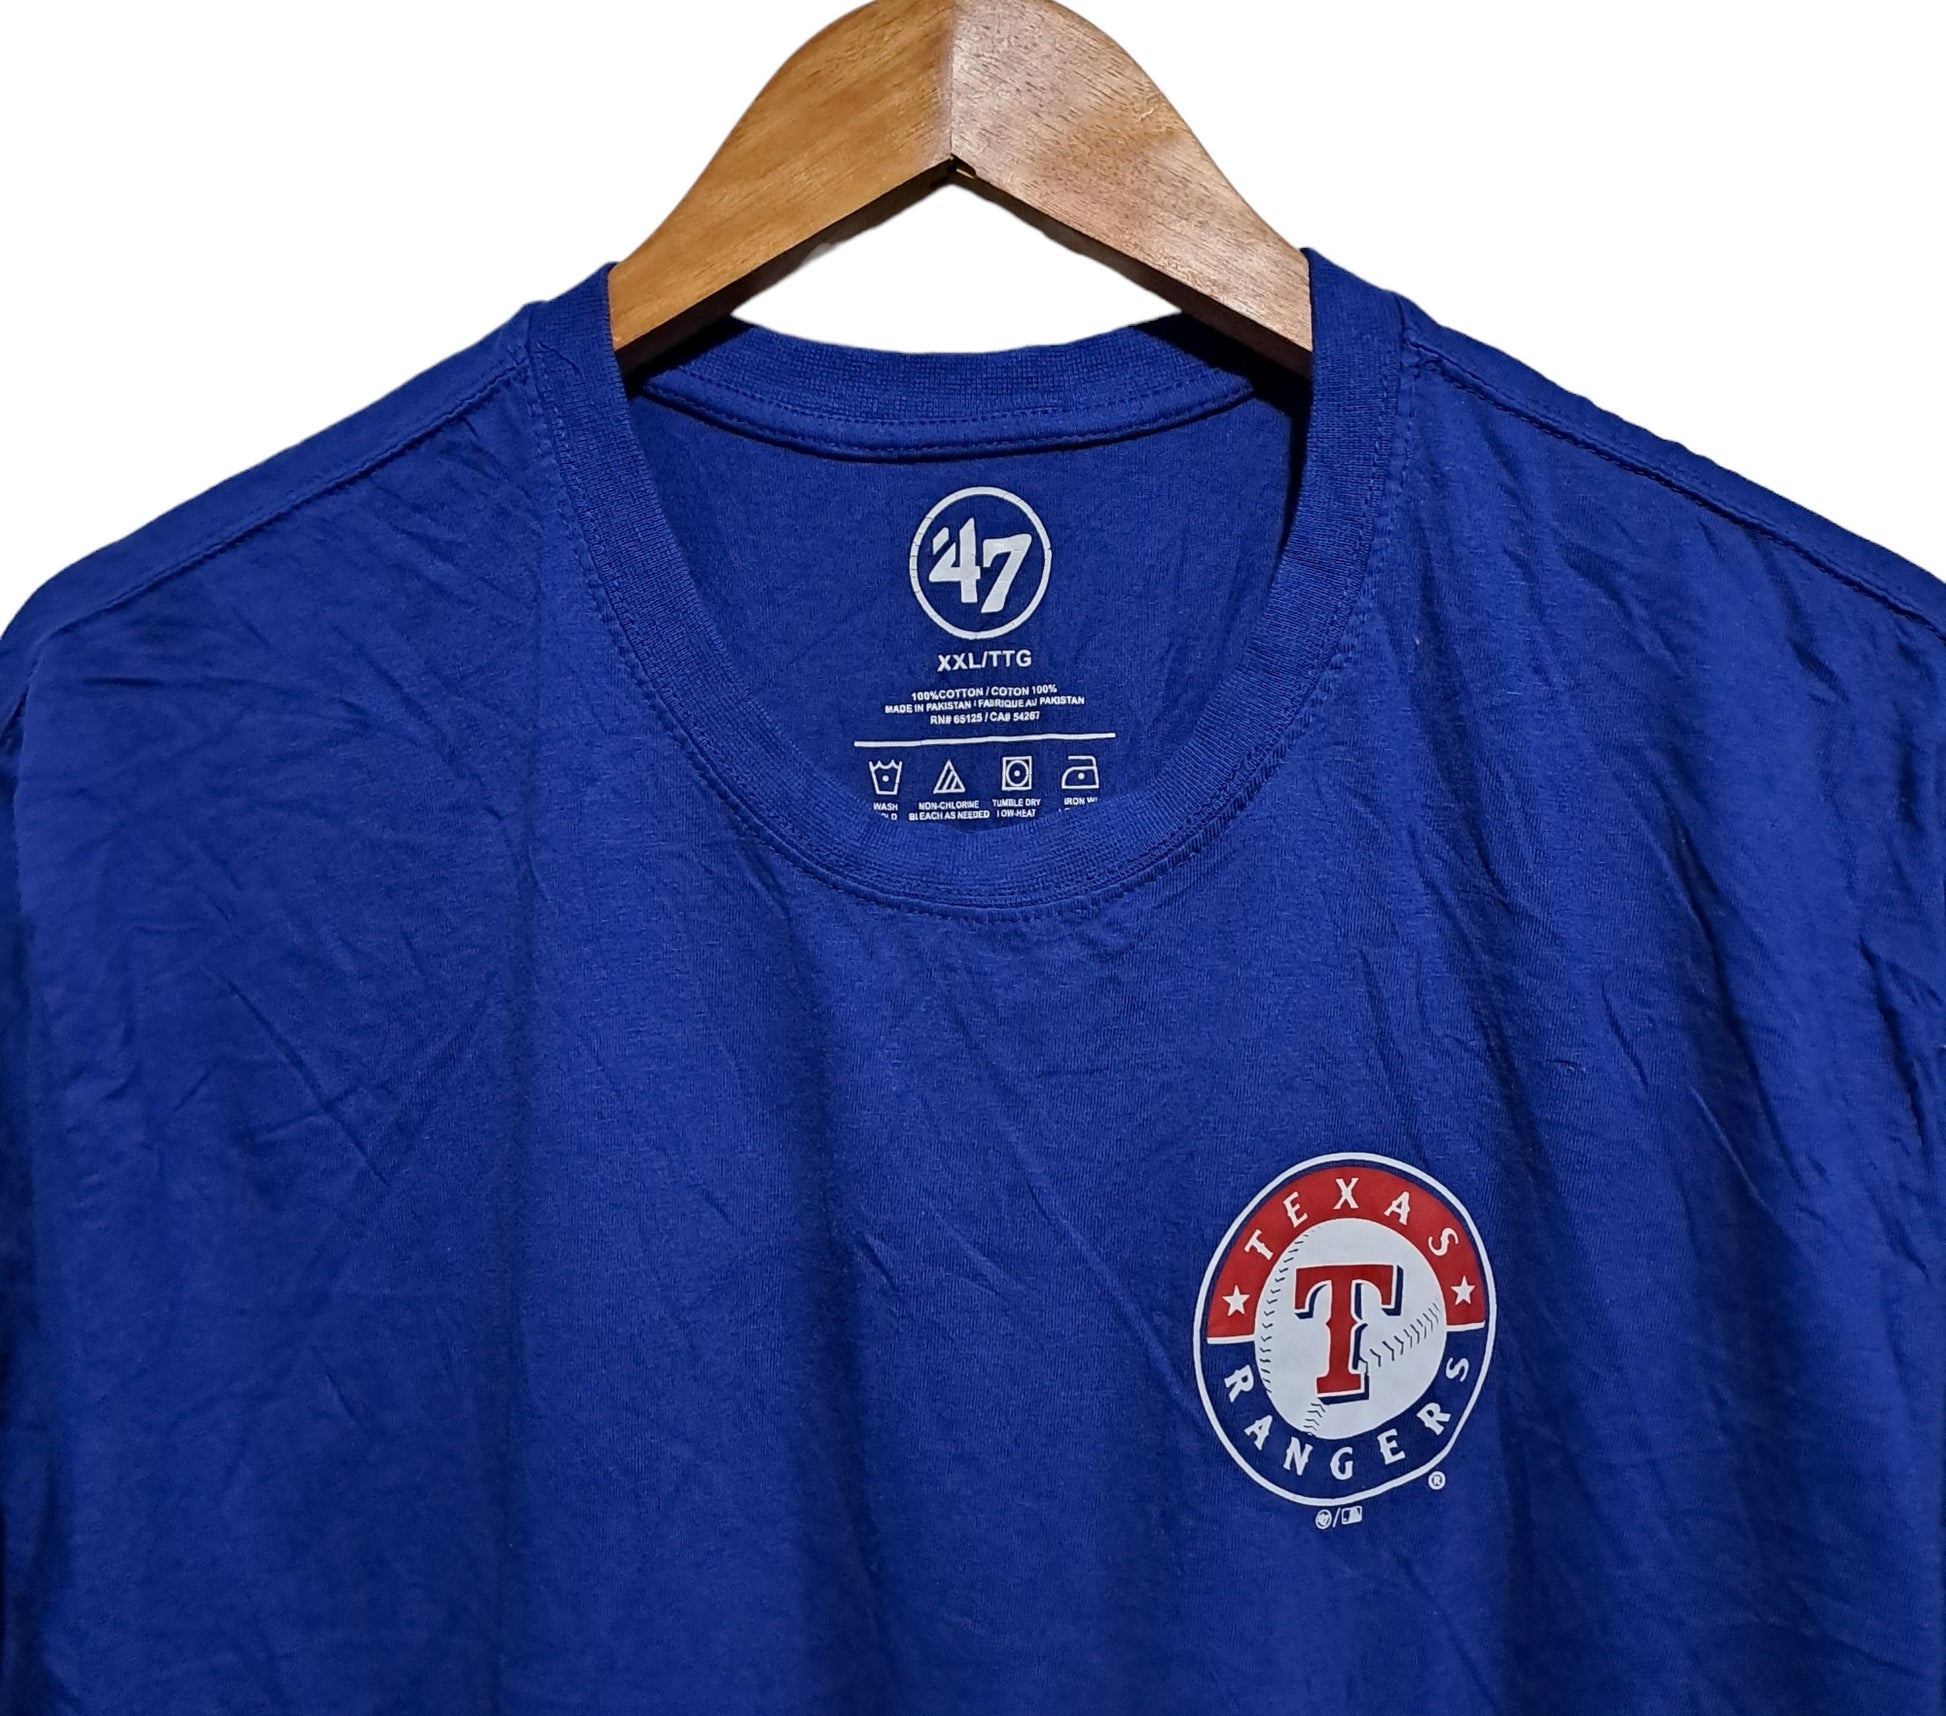 Blue shirt Texas Ranger  100% Cotton  XXL